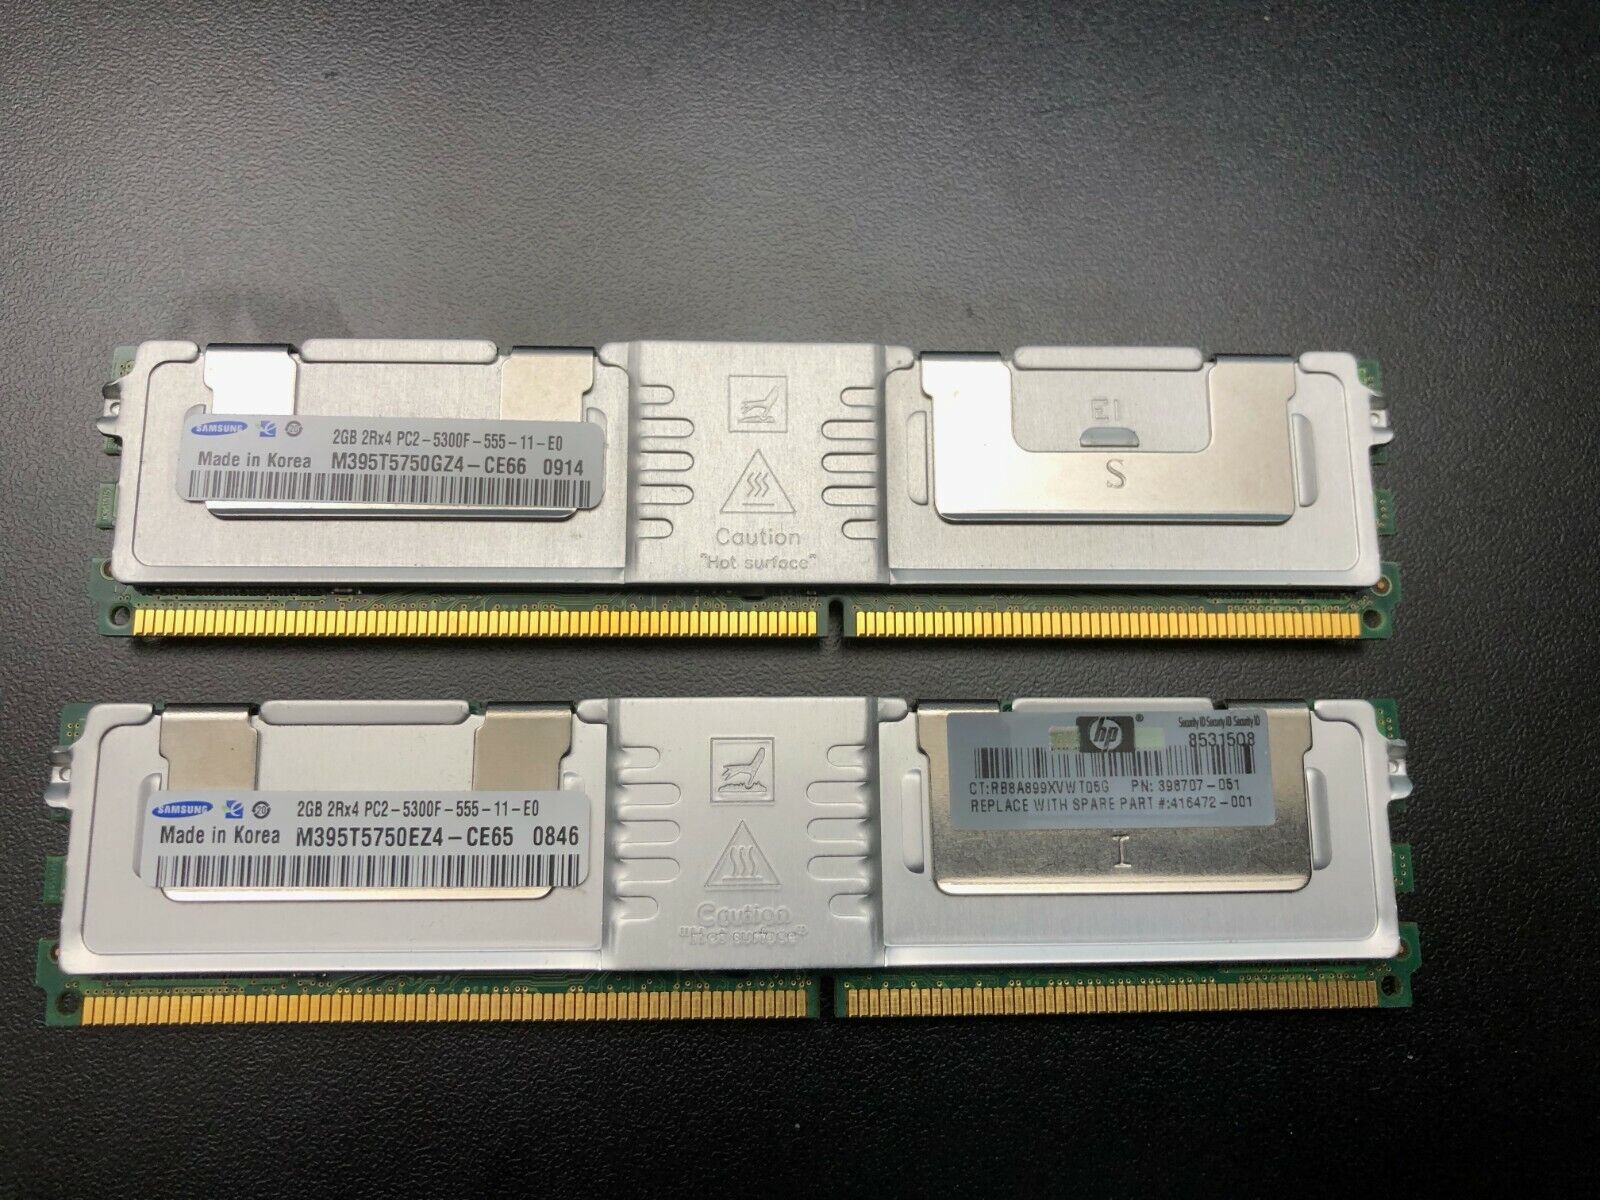 8 GB (4x2GB) Kingston  KVR667D2D8F5/2G PC2-5300F ECC FB-DIMM Memory